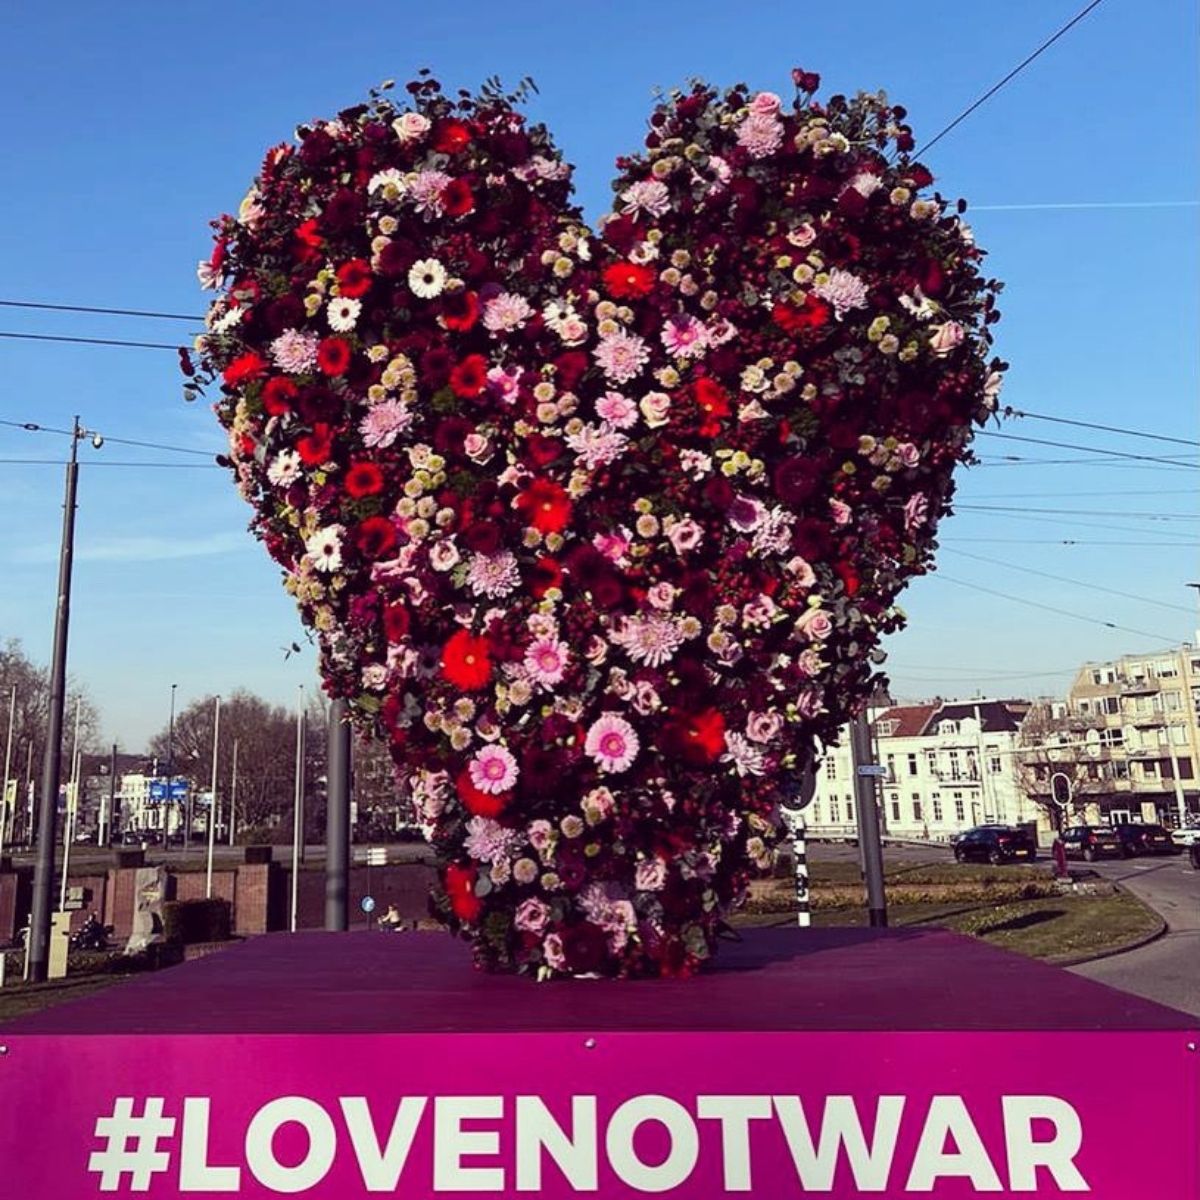 Heart for #lovenotwar at Auction Plantion - on Thursd